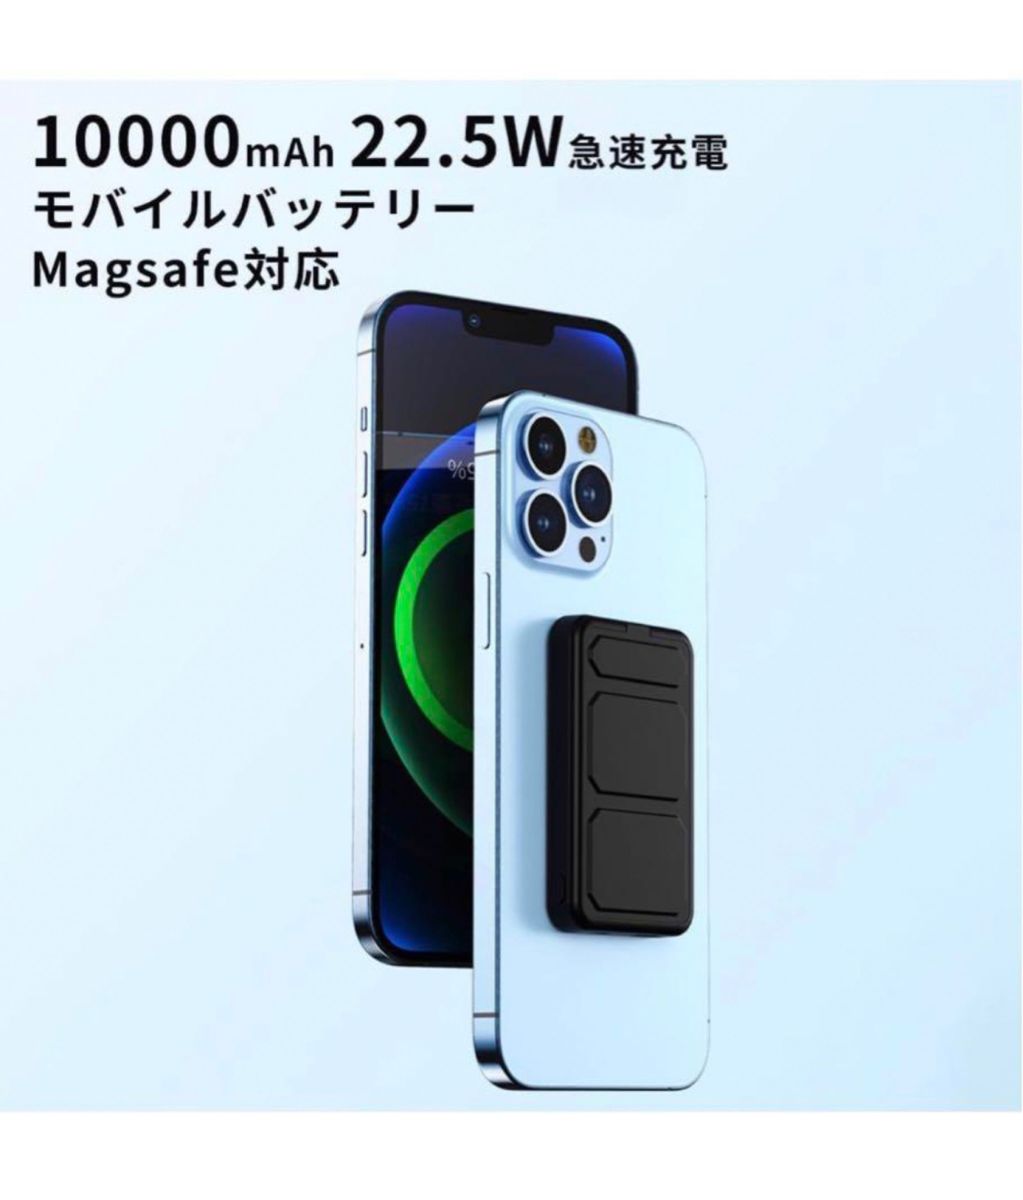 MagSafeモバイルバッテリー iphone 10000mAh 大容量 22.5W急速充電 ワイヤレスマグネット式 ベールピンク